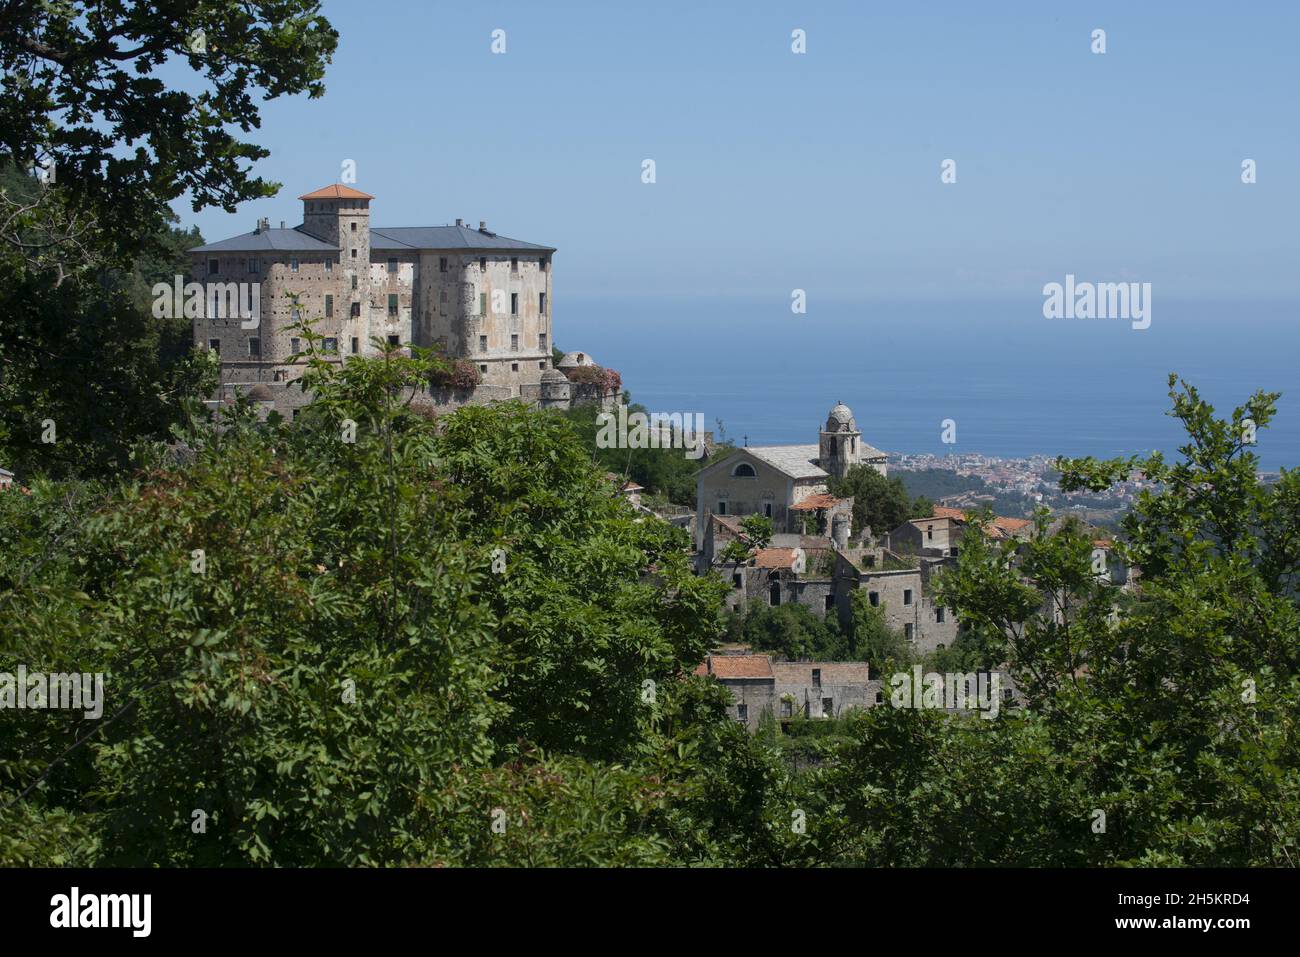 Villaggio abbandonato di Balestrino dopo la minaccia del terremoto, nei pressi di Loano, Italia; Balestrino, Liguria, Italia Foto Stock